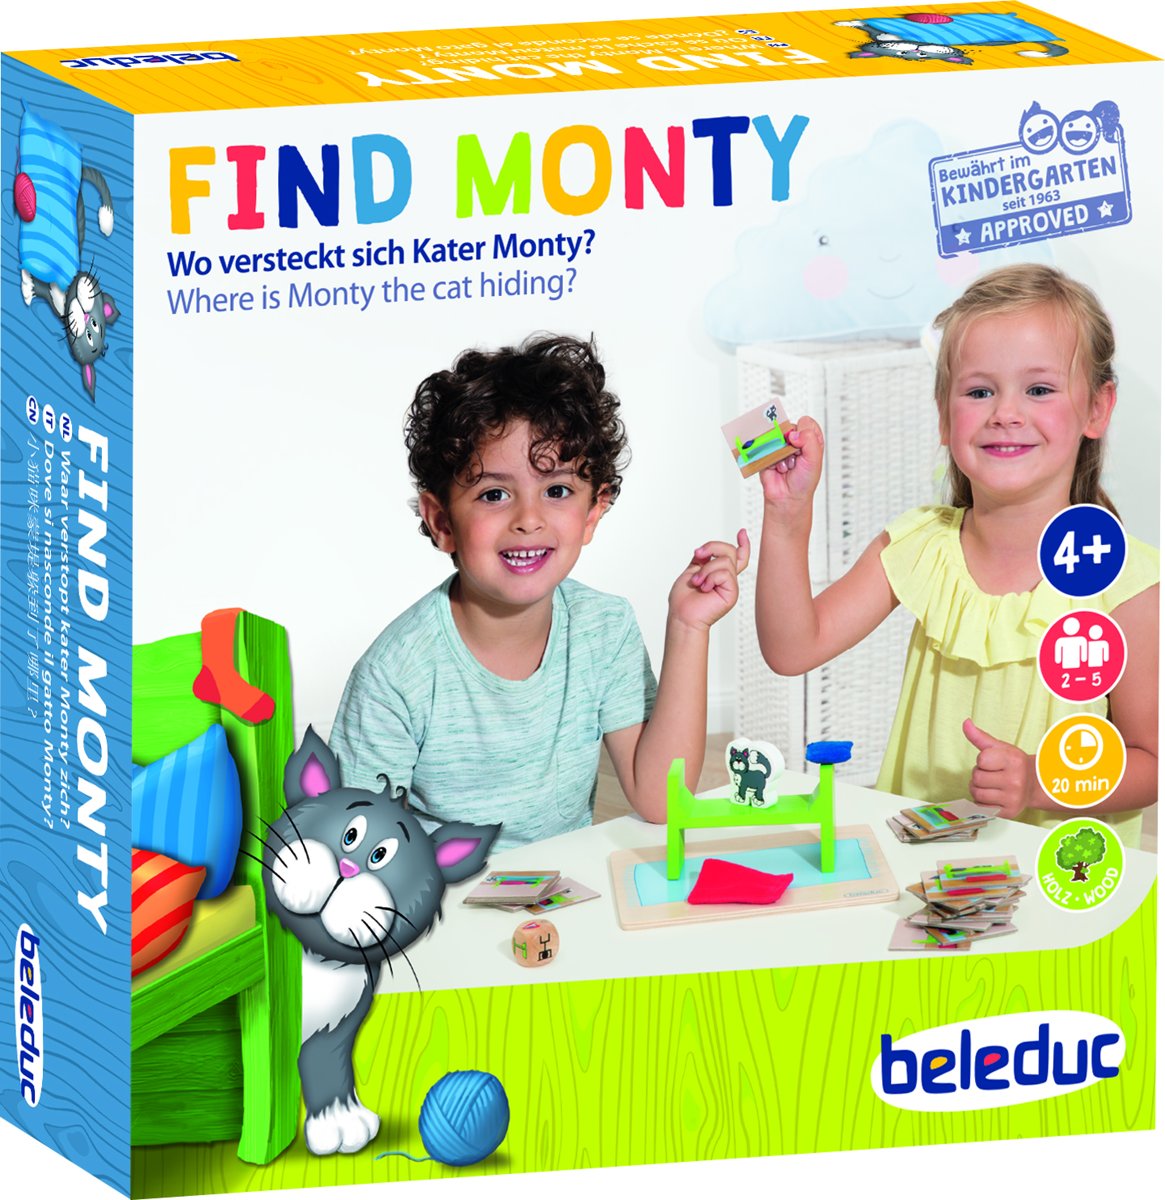 Find Monty! - Beleduc - gezellig spel ter bevordering van spraak, taal, geheugen en waarneming